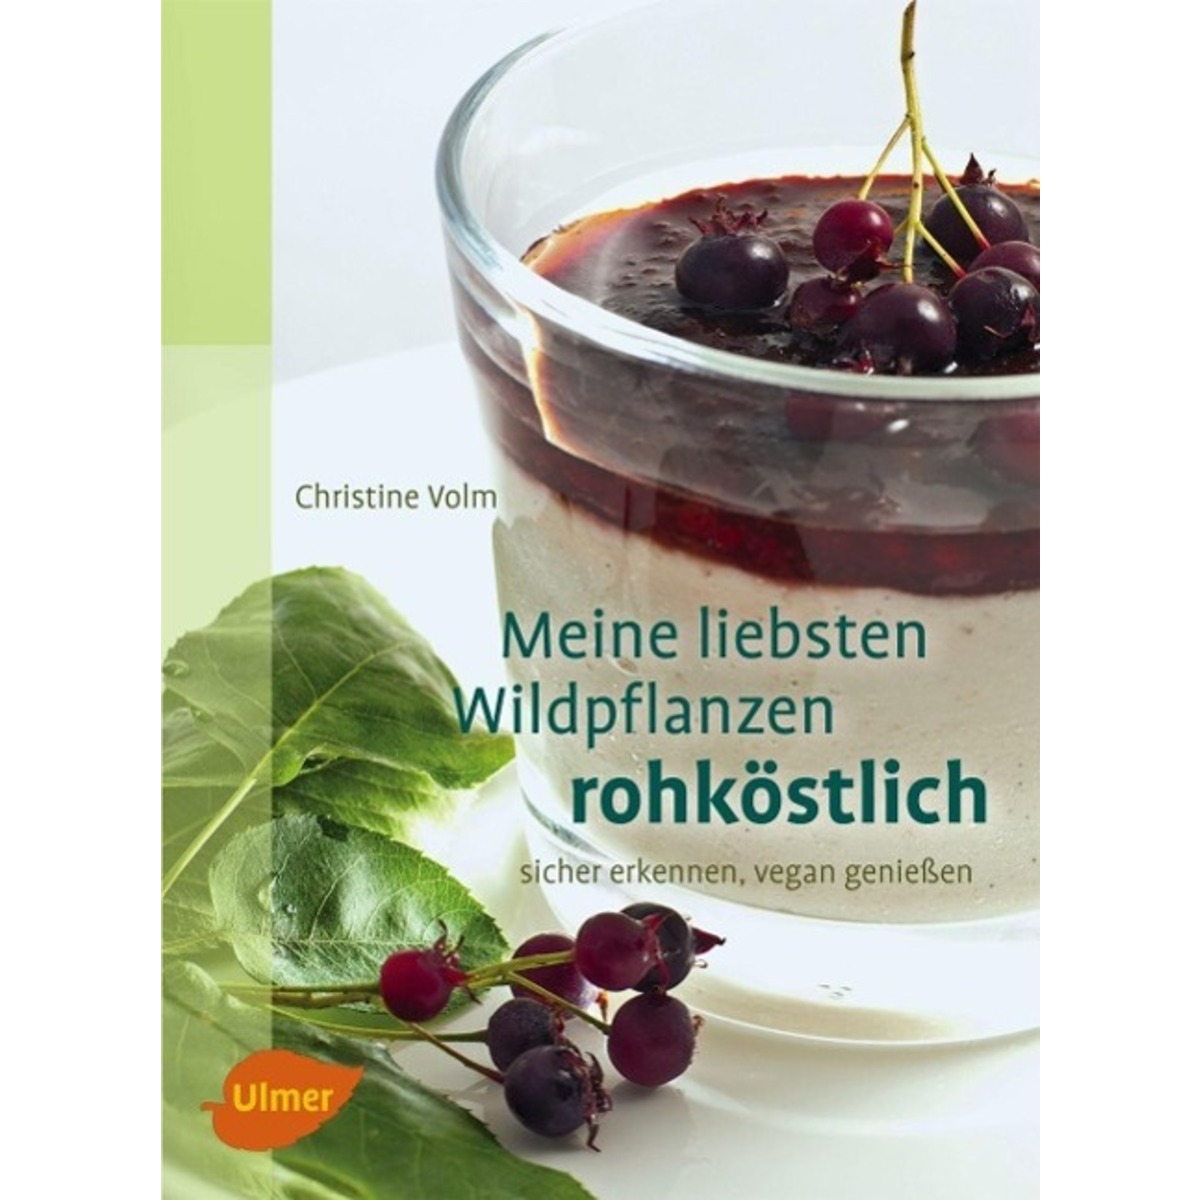 Meine liebsten Wildpflanzen - rohköstlich von Ulmer Eugen Verlag